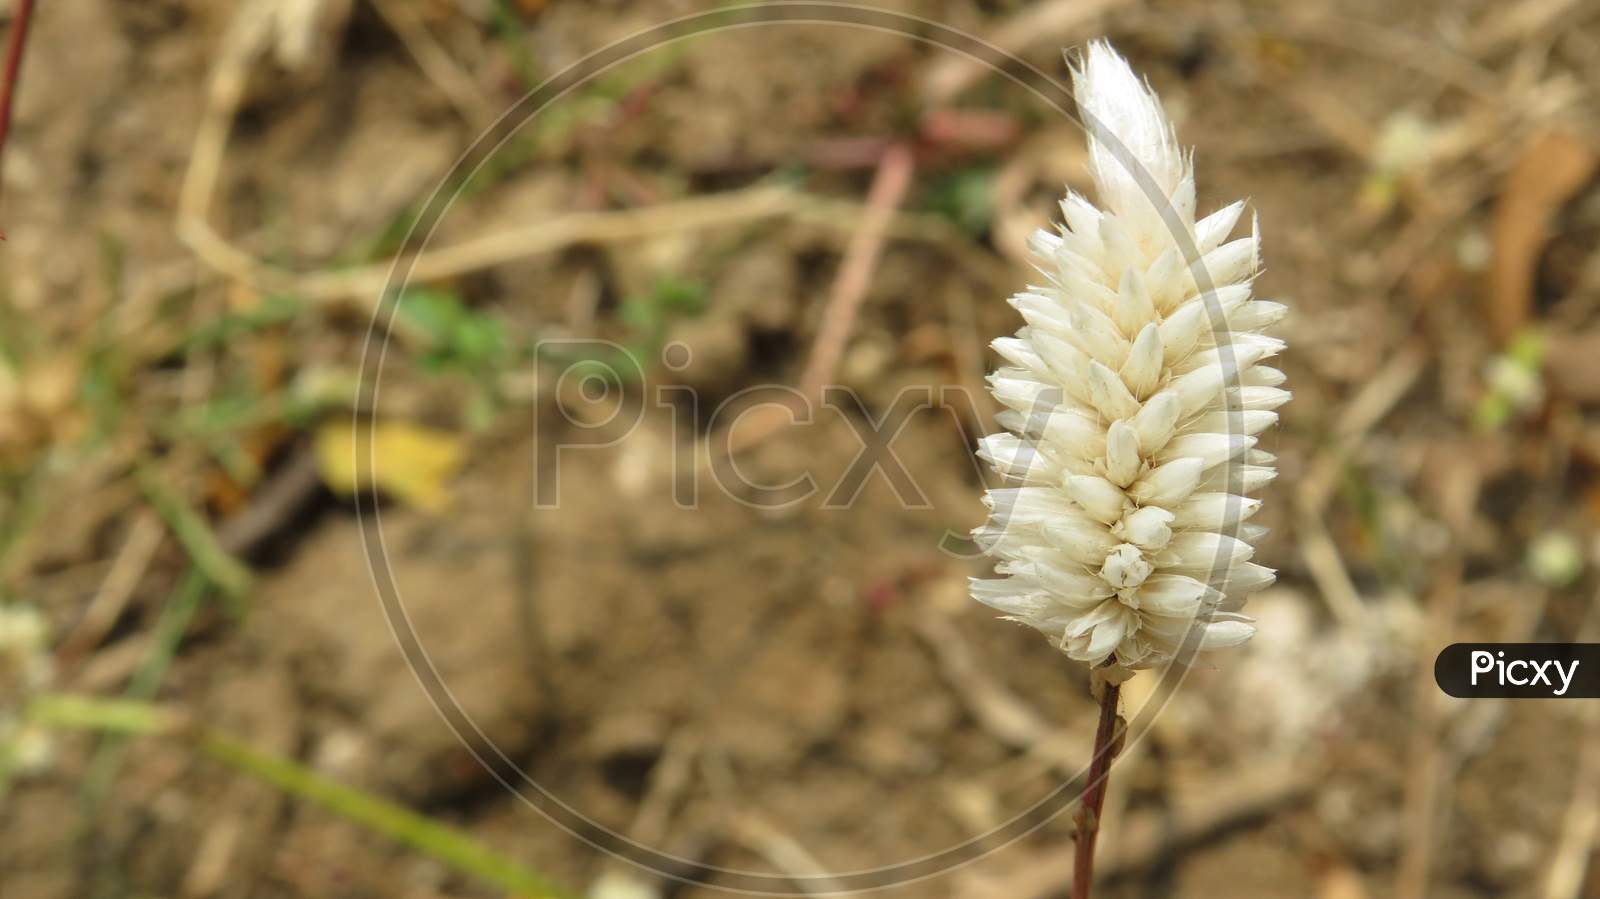 White small flower